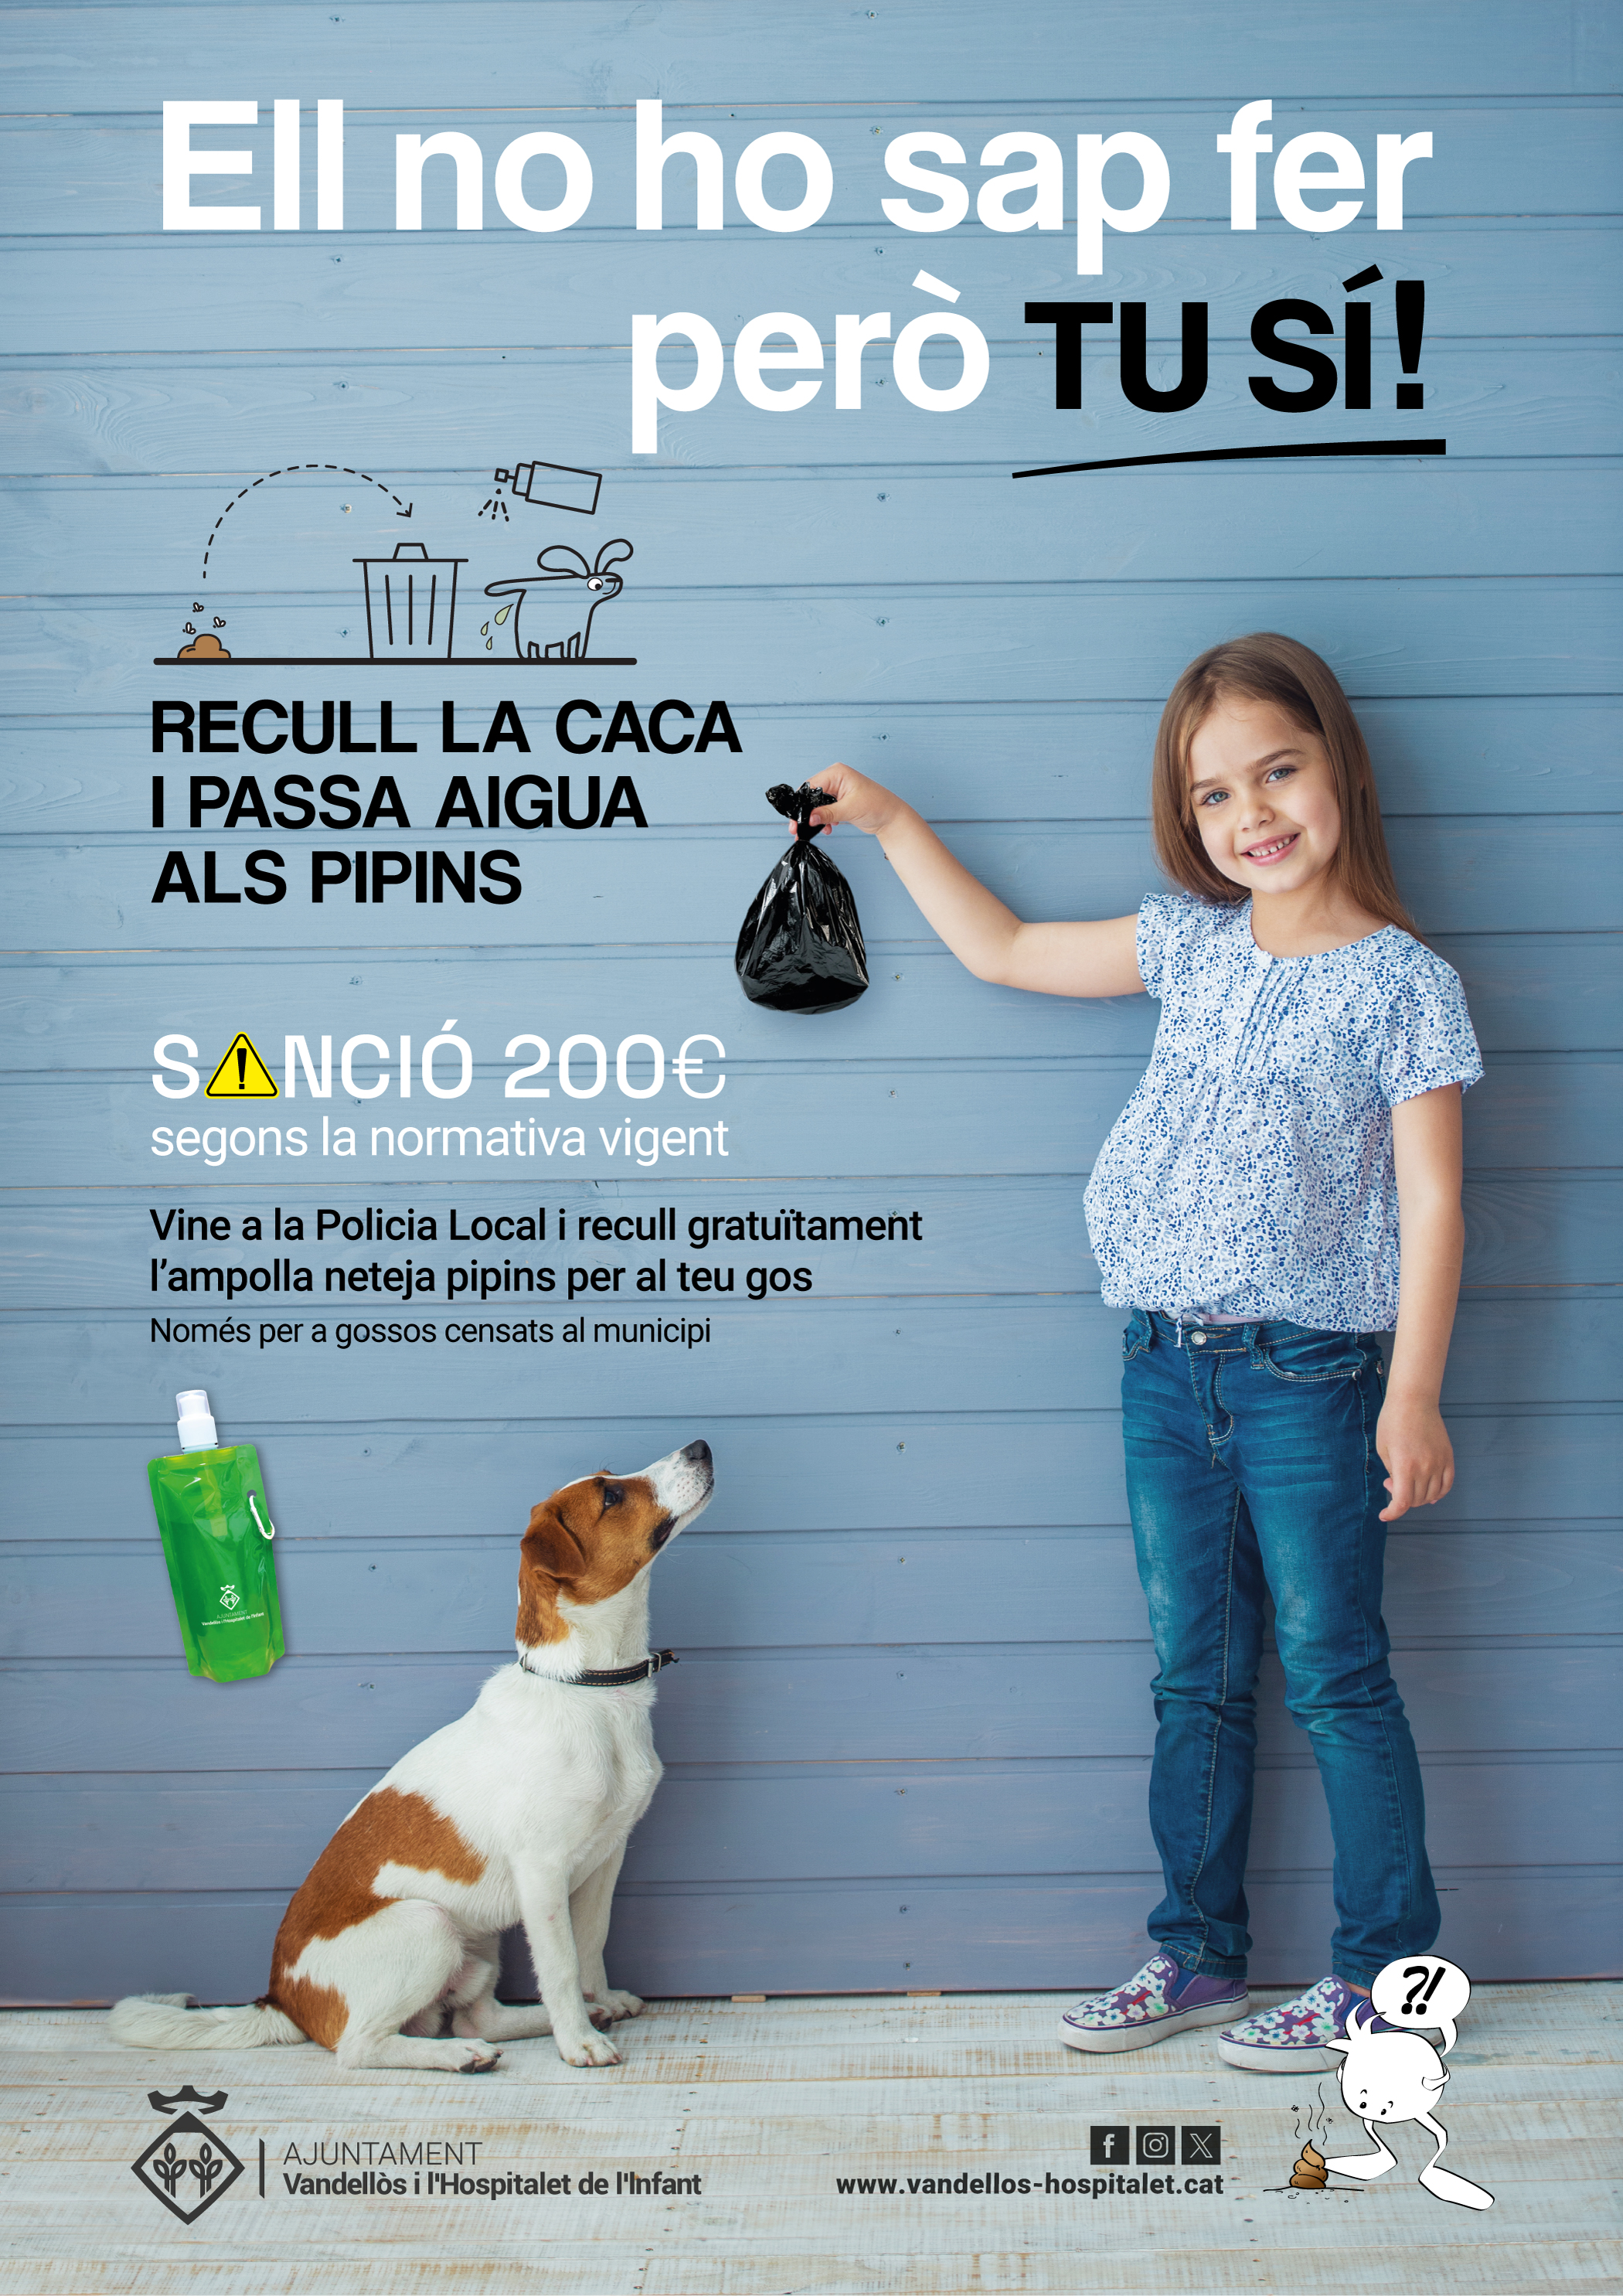 L’Ajuntament de Vandellòs i l’Hospitalet de l’Infant engega una campanya de sensibilització contra les caques i pipins dels gossos